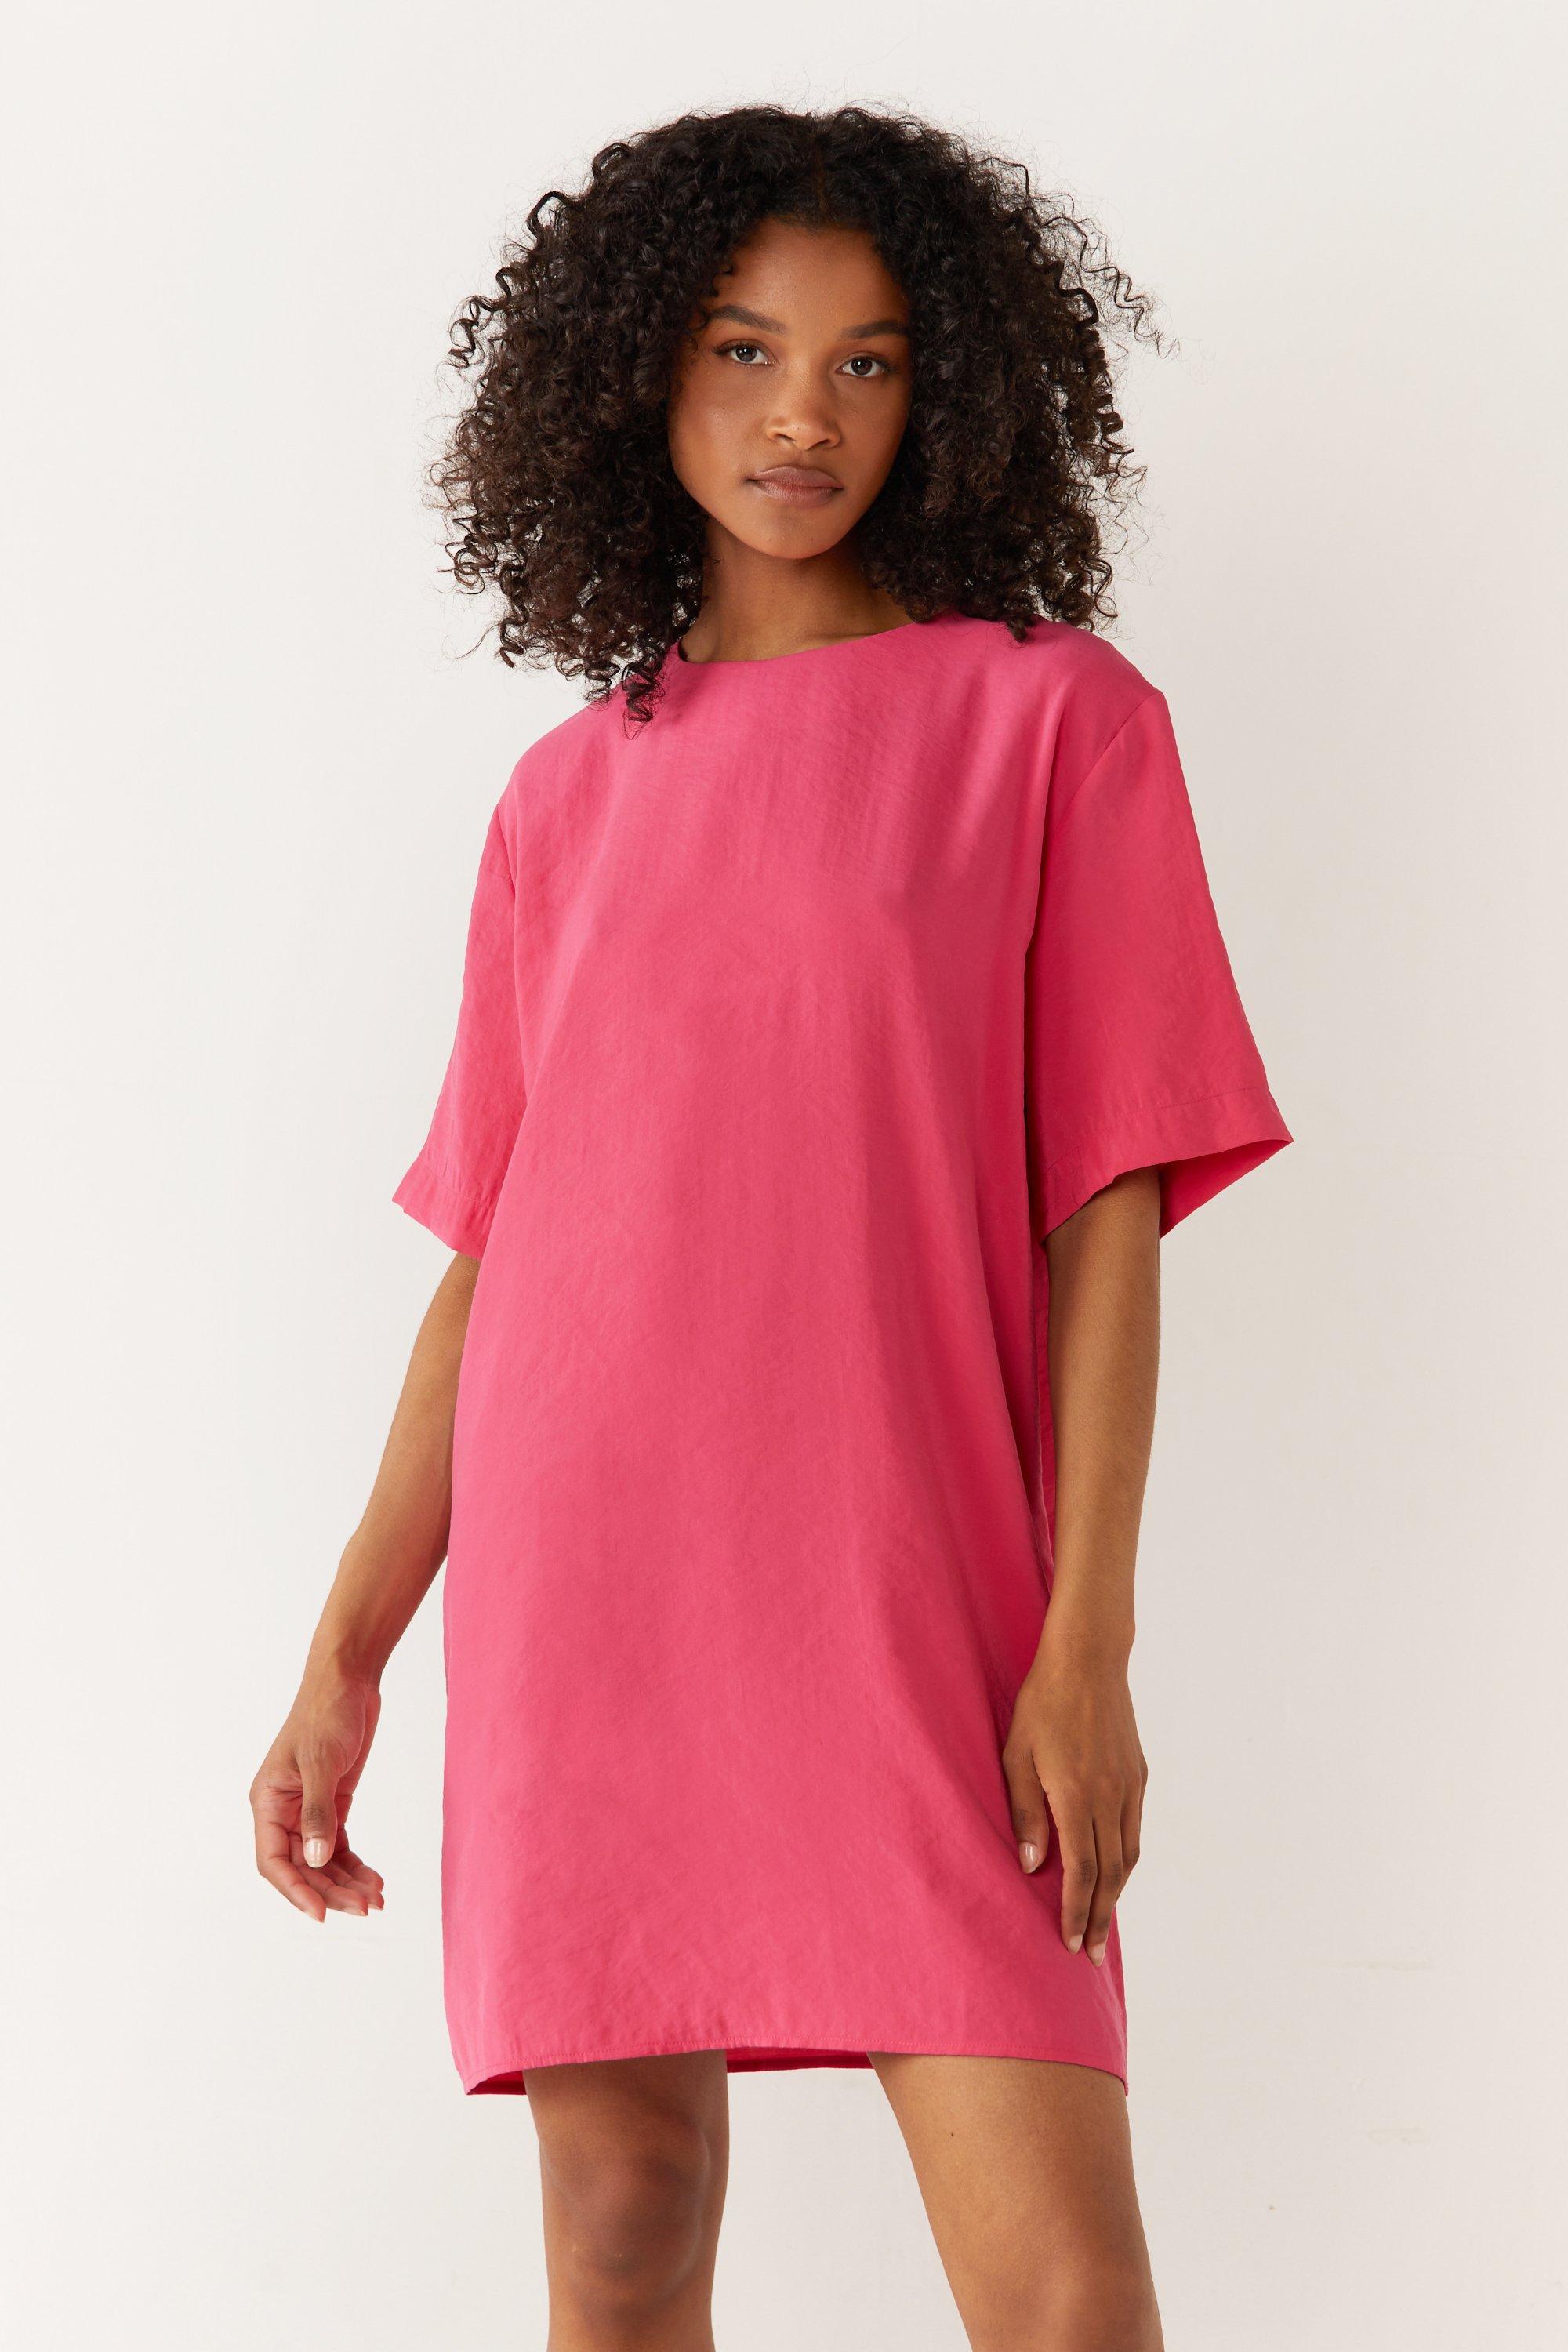 Womens Short Sleeve Textured T-shirt Dress - magenta